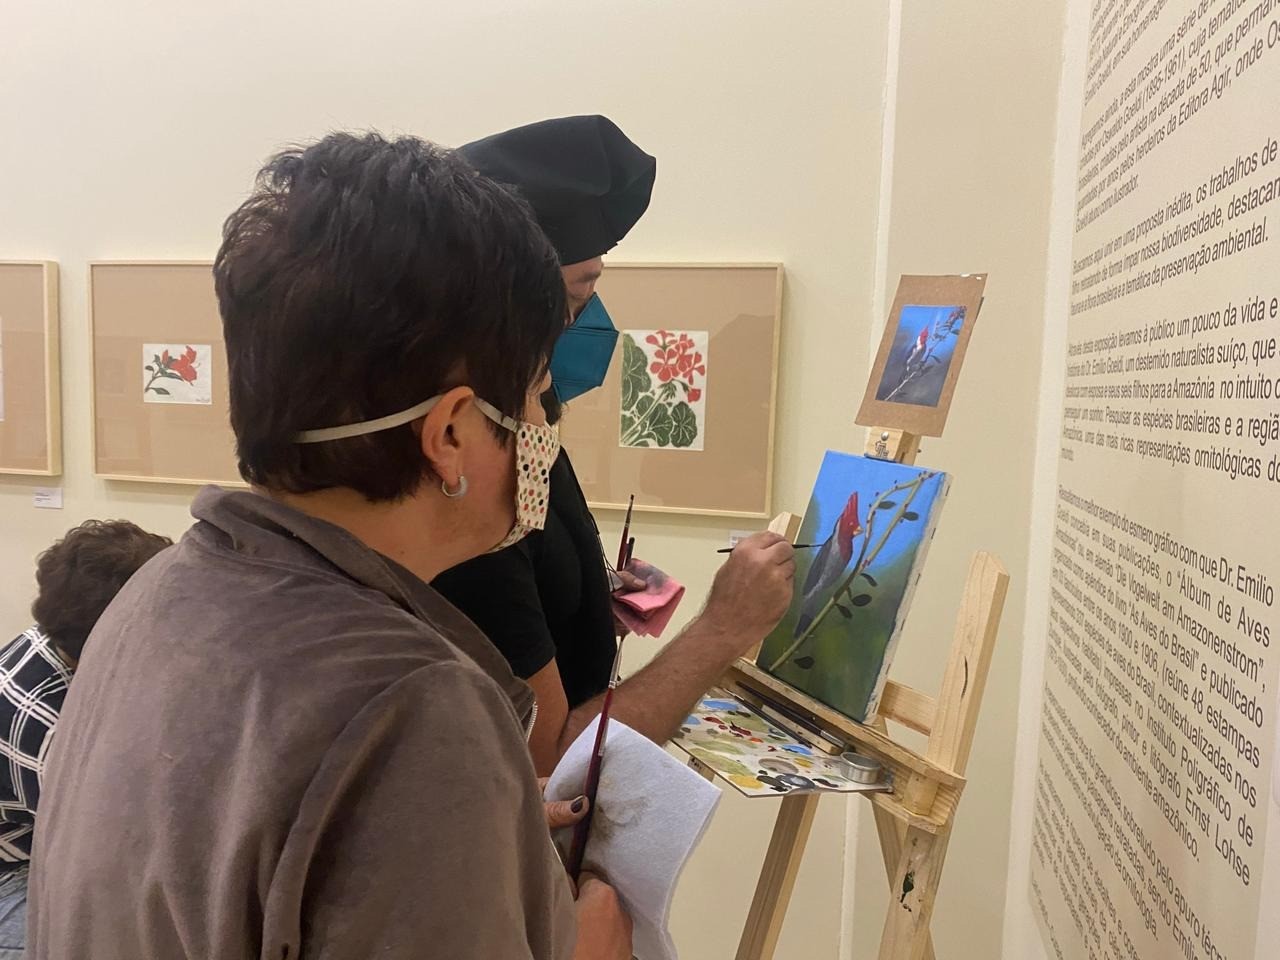 艺术家马尔西奥·卡内罗 (黑色帽子) 在他教的绘画工作室期间 3 七月在展览空间“巴西动植物”, 否Via Vale Garden购物. 照片: 泄露.